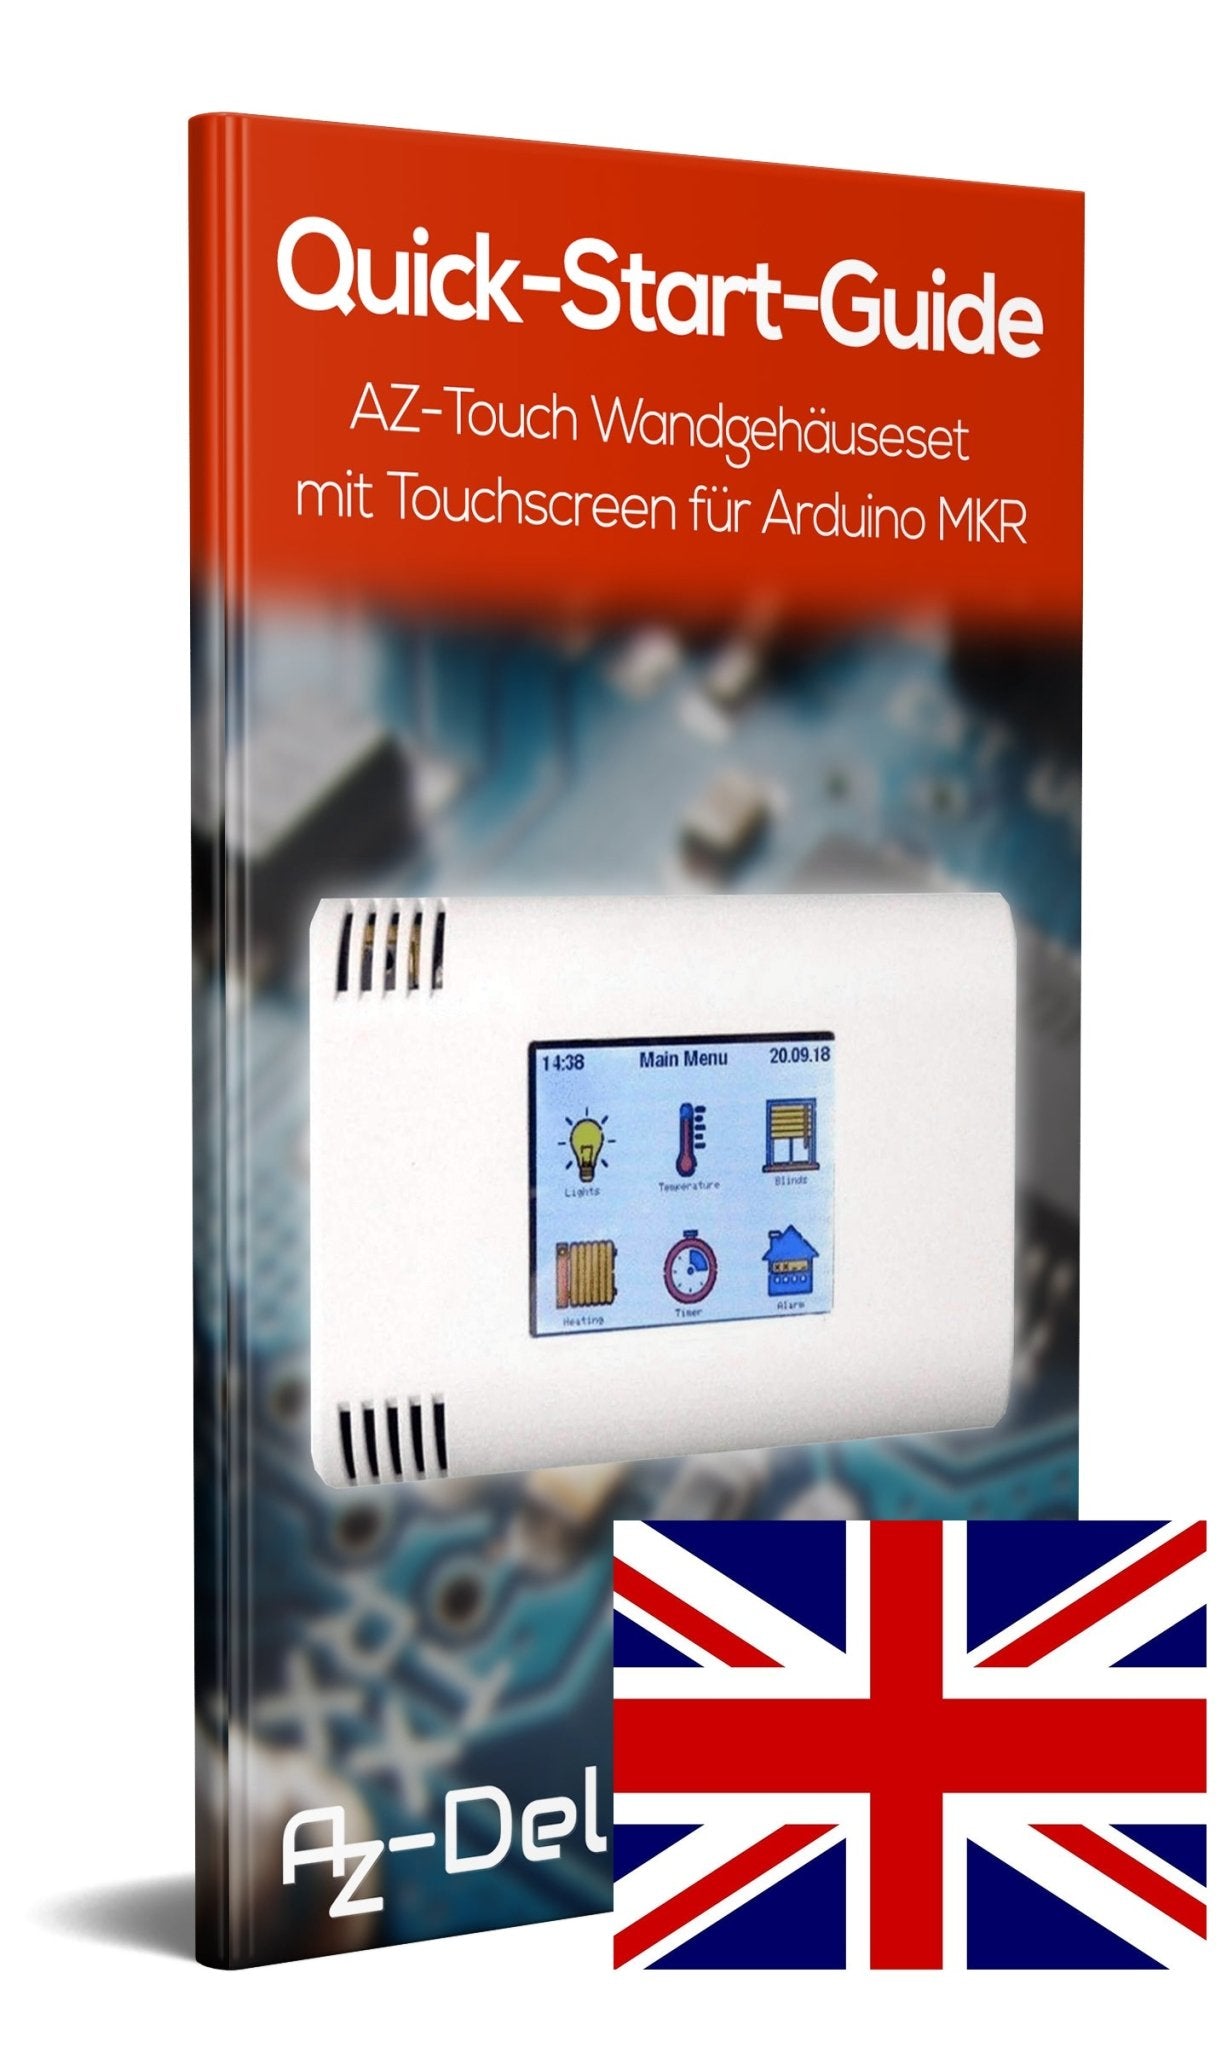 AZ-Touch Wandgehäuseset mit Touchscreen für MKR - AZ-Delivery